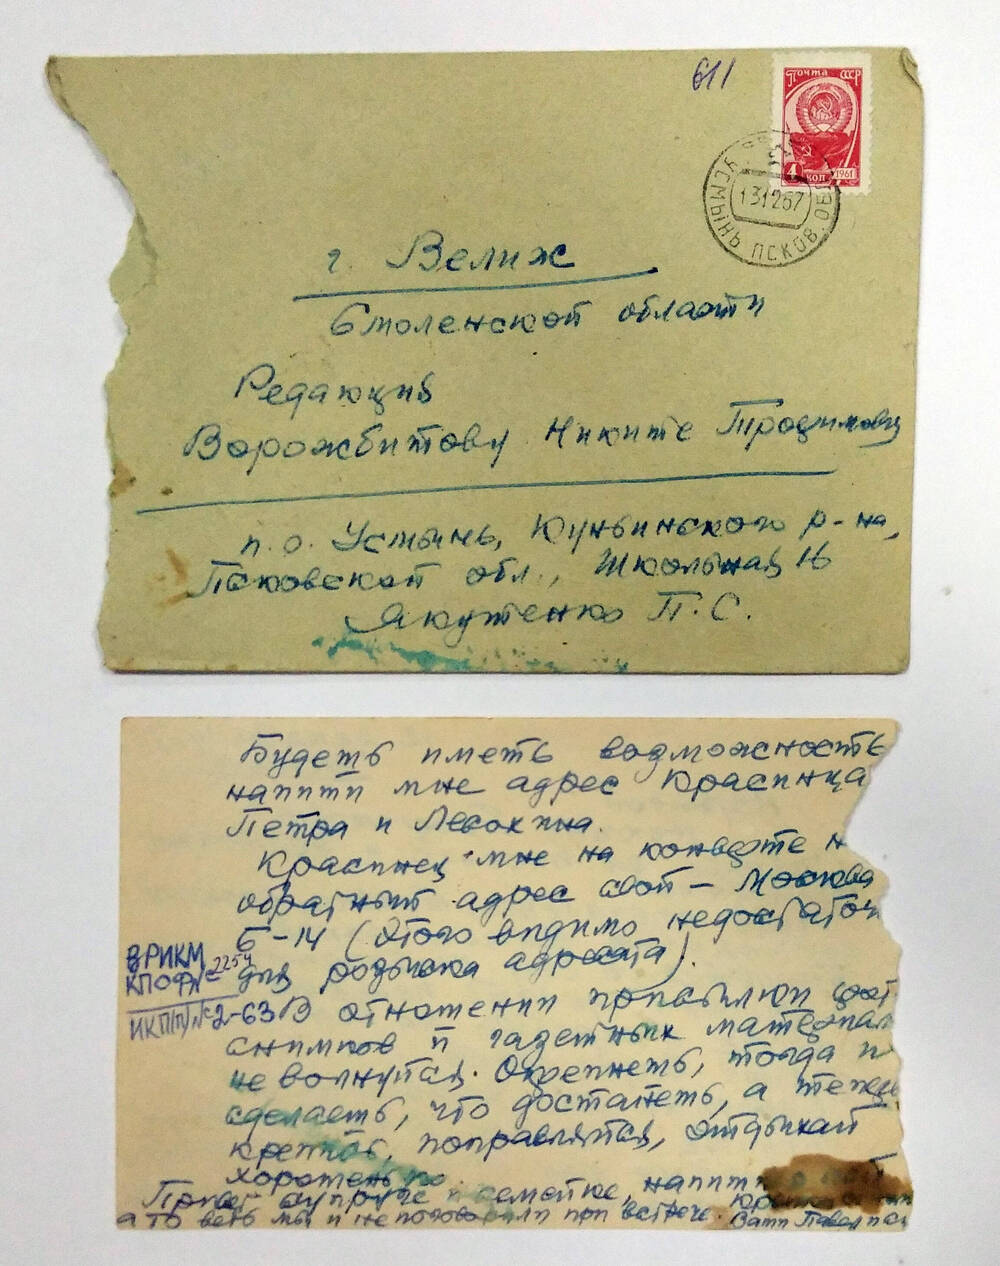 Письмо от Якутенко П.С. Воржбитову Никите Трофимовичу 12 декабря 1967 г.